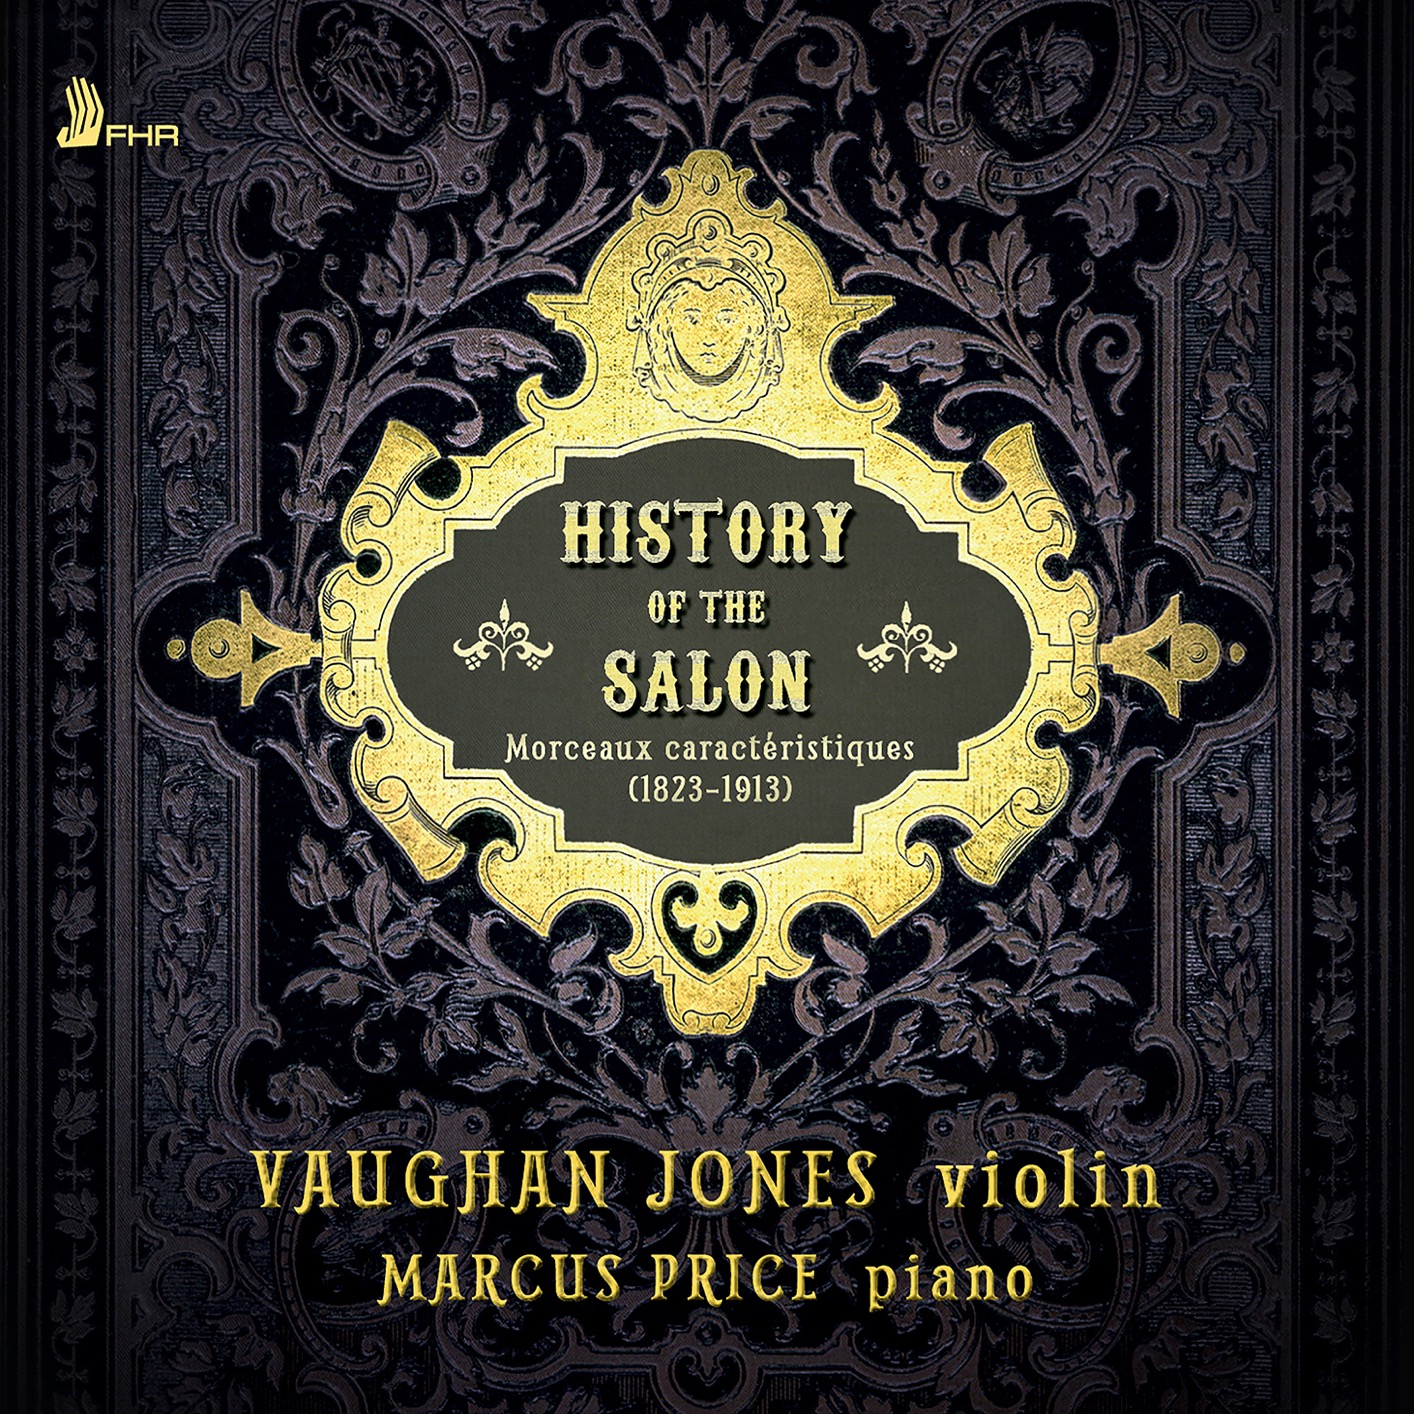 Vaughan Jones & Marcus Price – History of the Salon Morceaux caracteristiques (2020) [FLAC 24bit/96kHz]